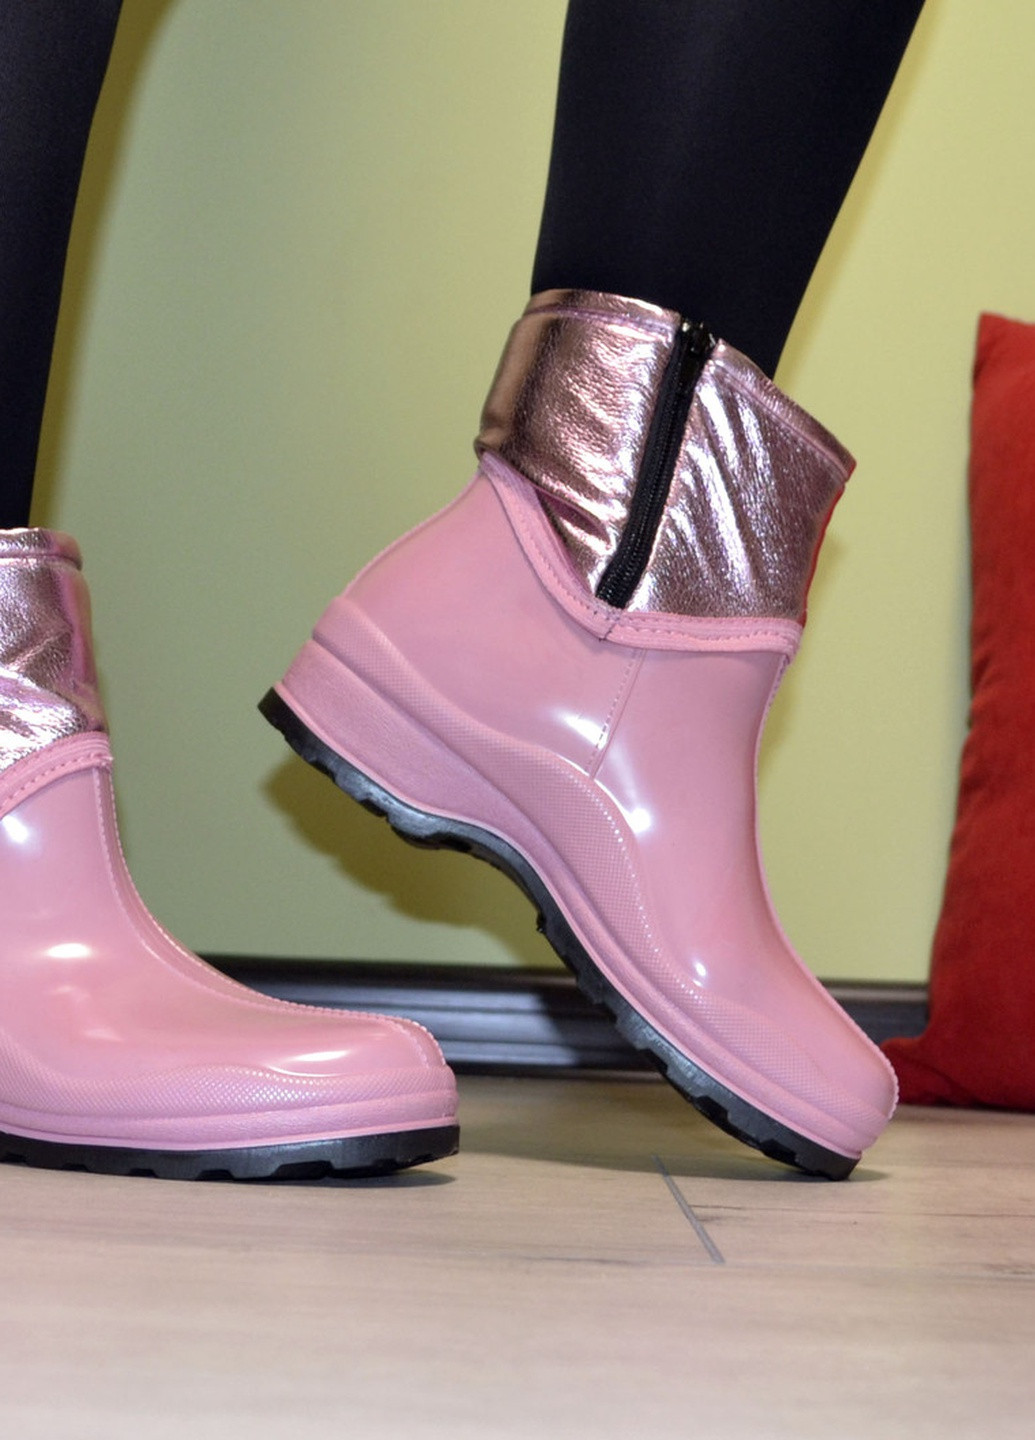 Розовые ботинки полусапожки резиновые непромокаемые утепленные флисом по всей длине розовые женские W-Shoes